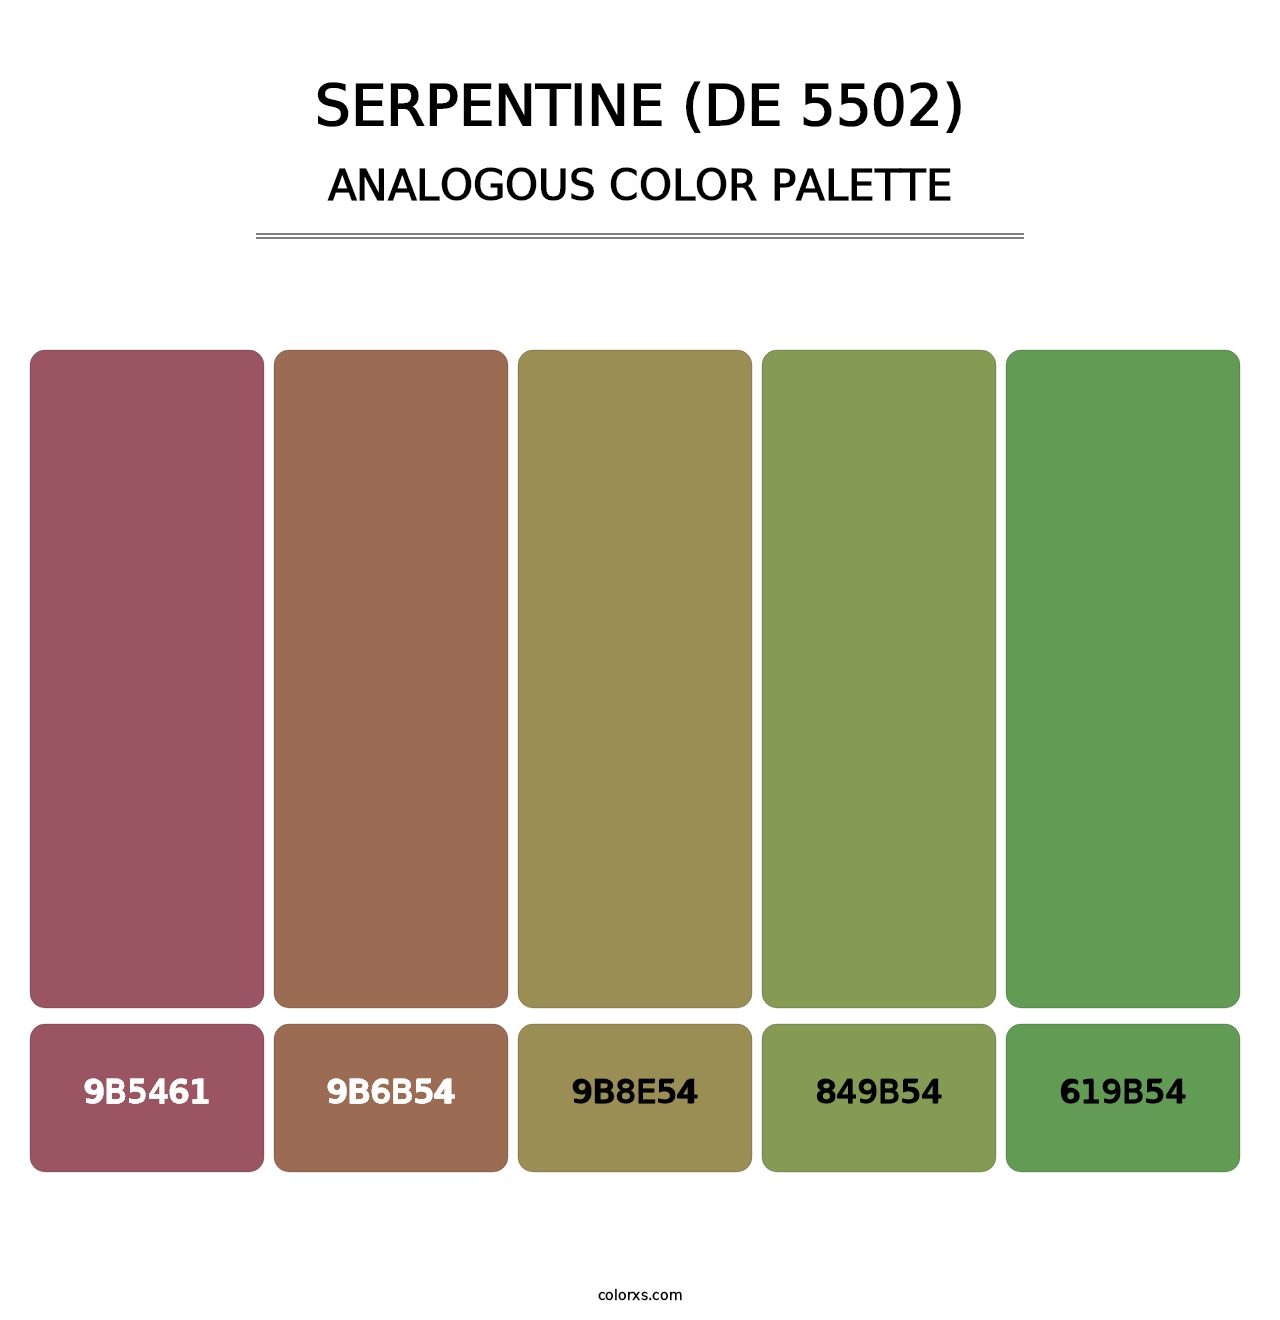 Serpentine (DE 5502) - Analogous Color Palette